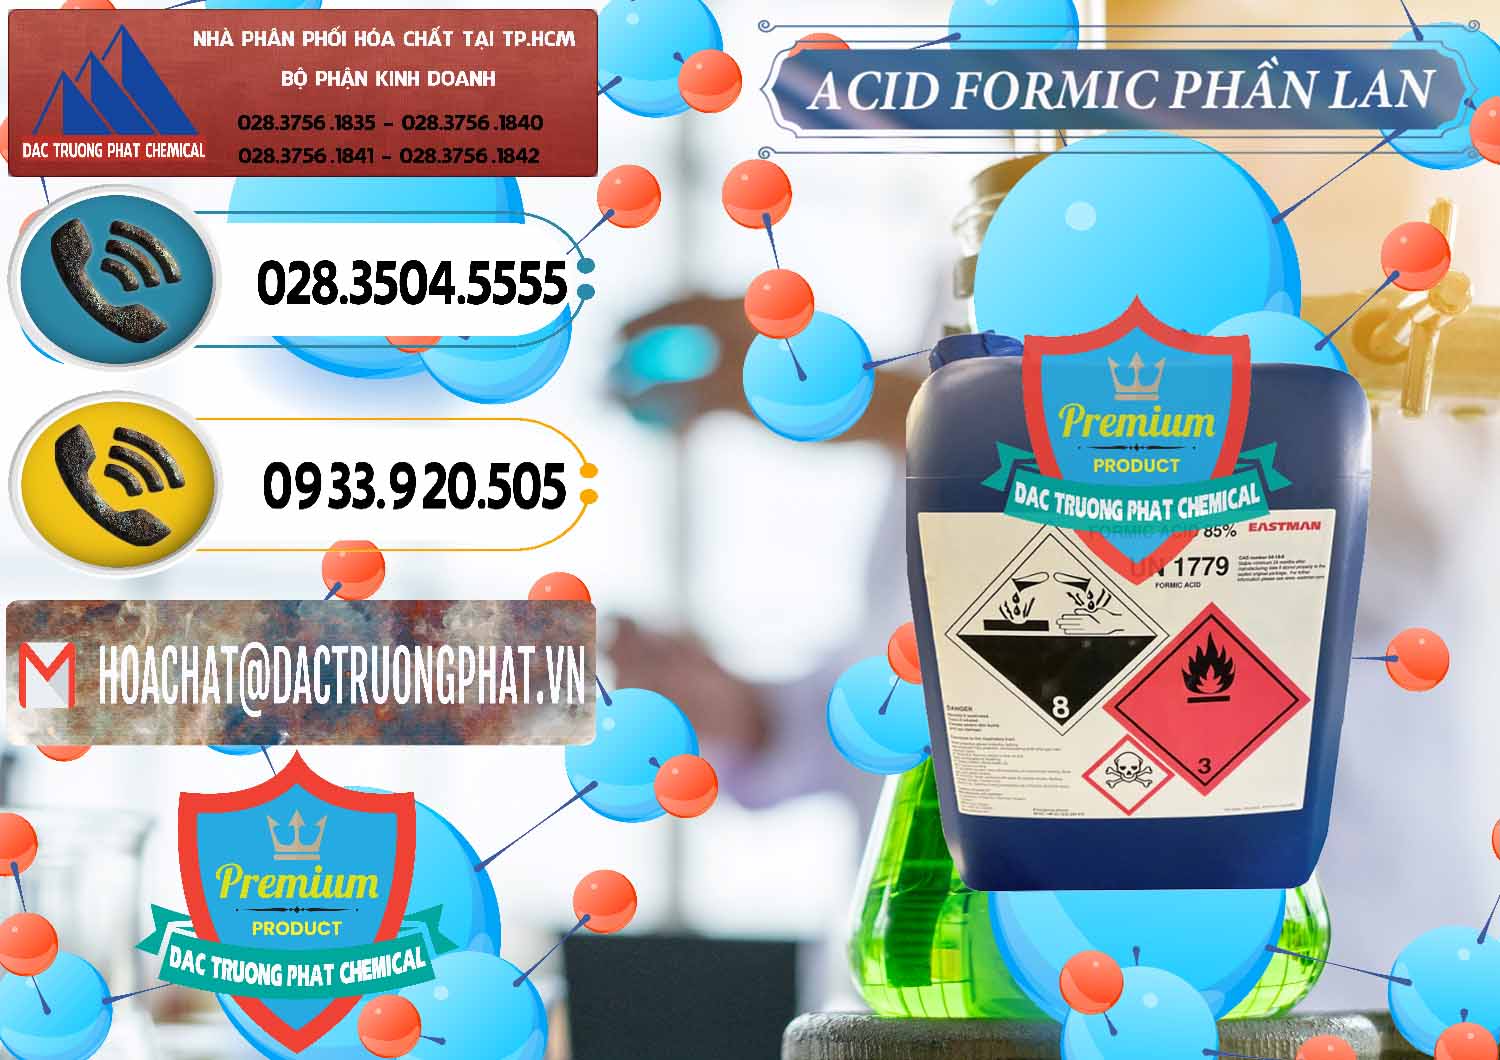 Bán & phân phối Acid Formic - Axit Formic Phần Lan Finland - 0376 - Đơn vị cung cấp và kinh doanh hóa chất tại TP.HCM - hoachatdetnhuom.vn